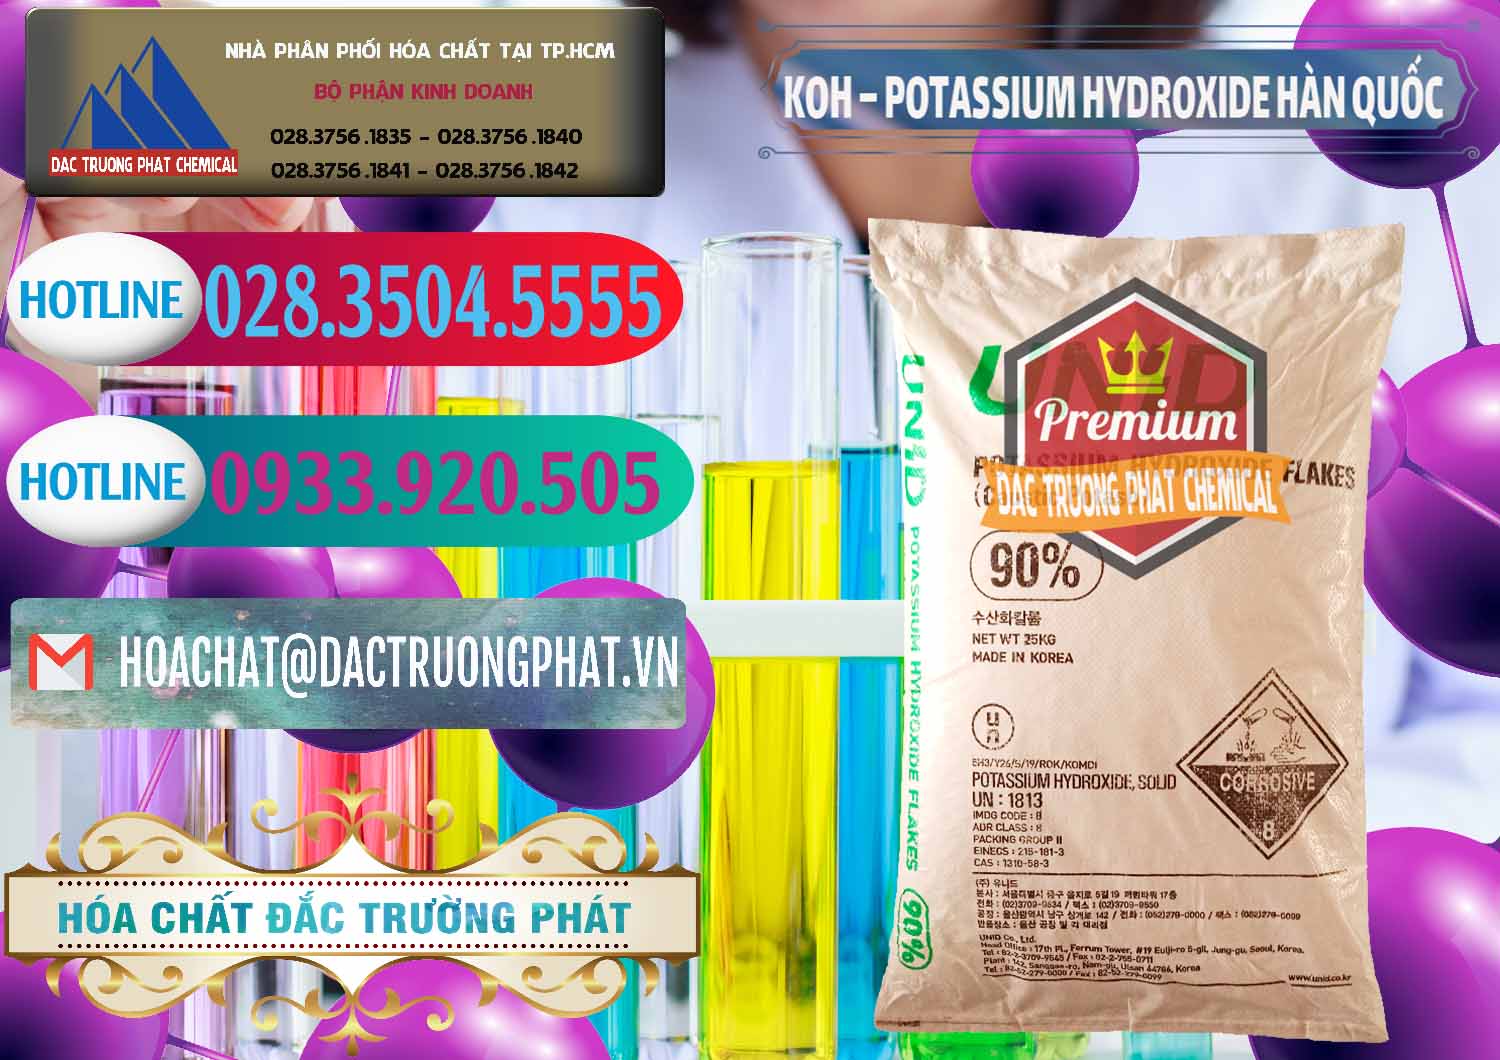 Chuyên kinh doanh ( bán ) KOH ( 90%) – Potassium Hydroxide Unid Hàn Quốc Korea - 0090 - Nhập khẩu và phân phối hóa chất tại TP.HCM - truongphat.vn